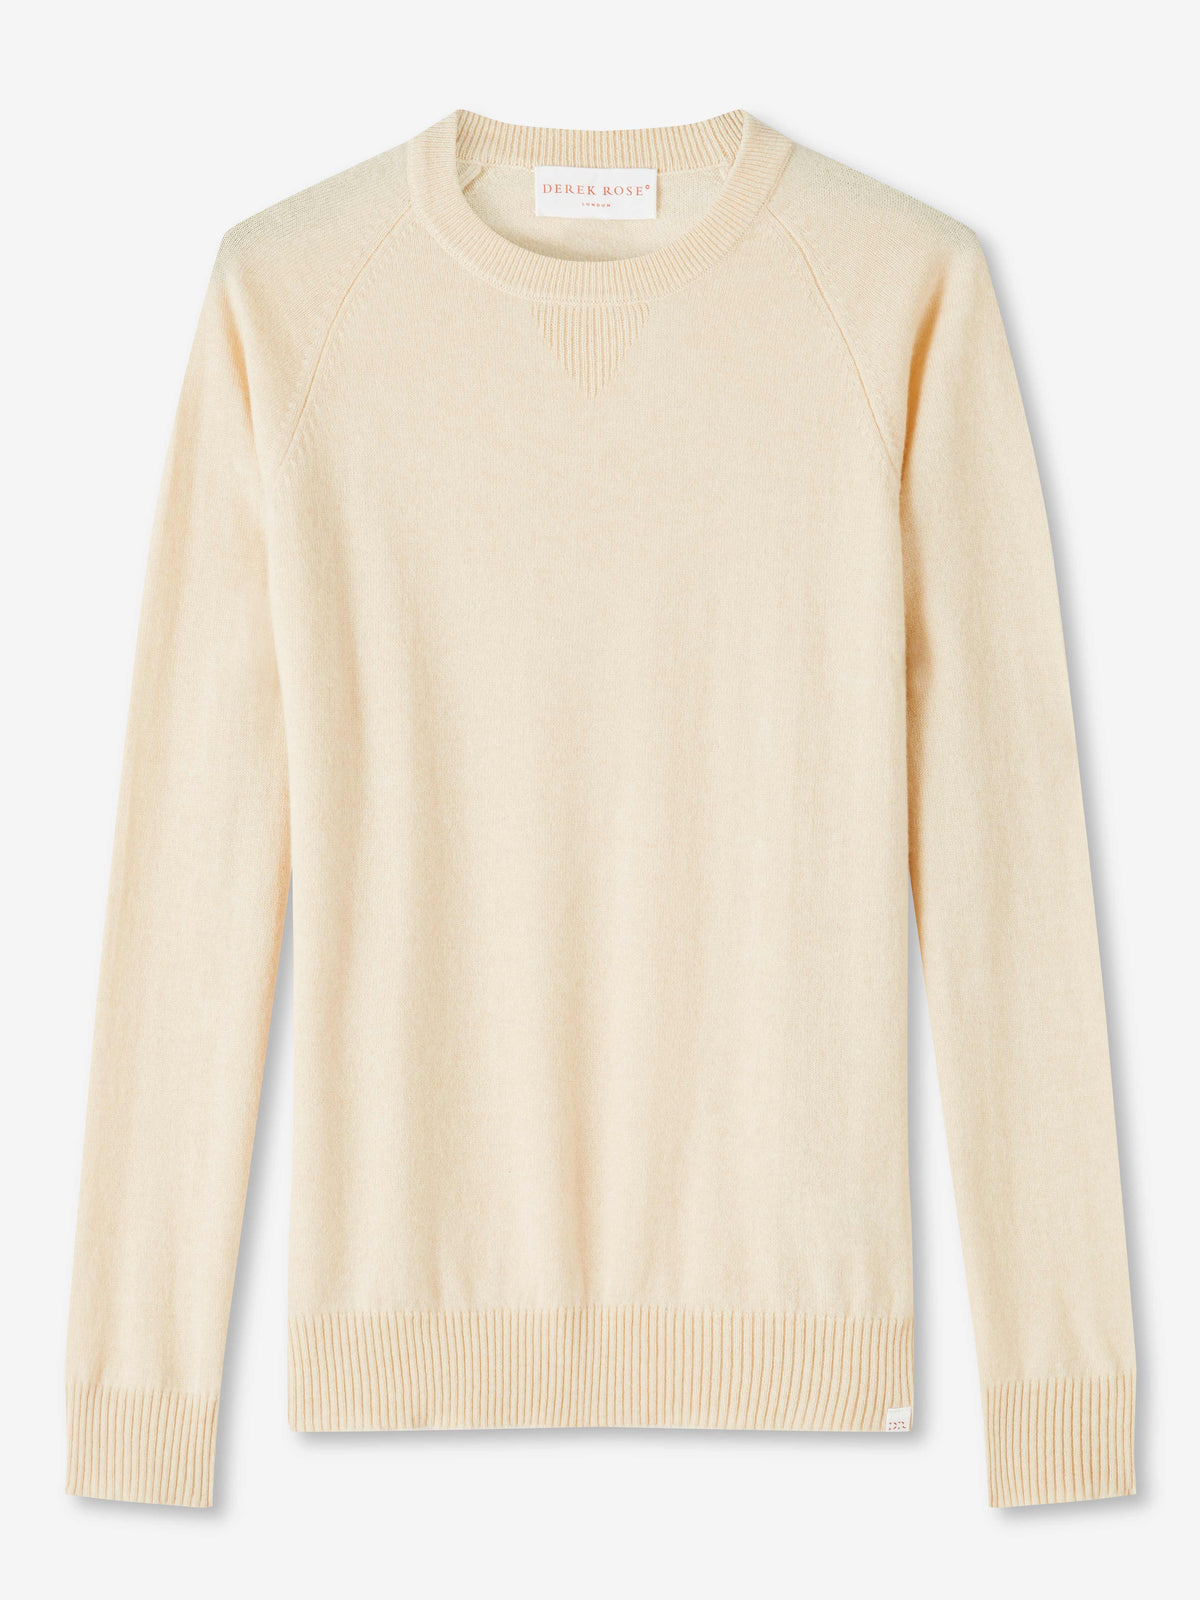 Men's Sweater Finley Cashmere Cream